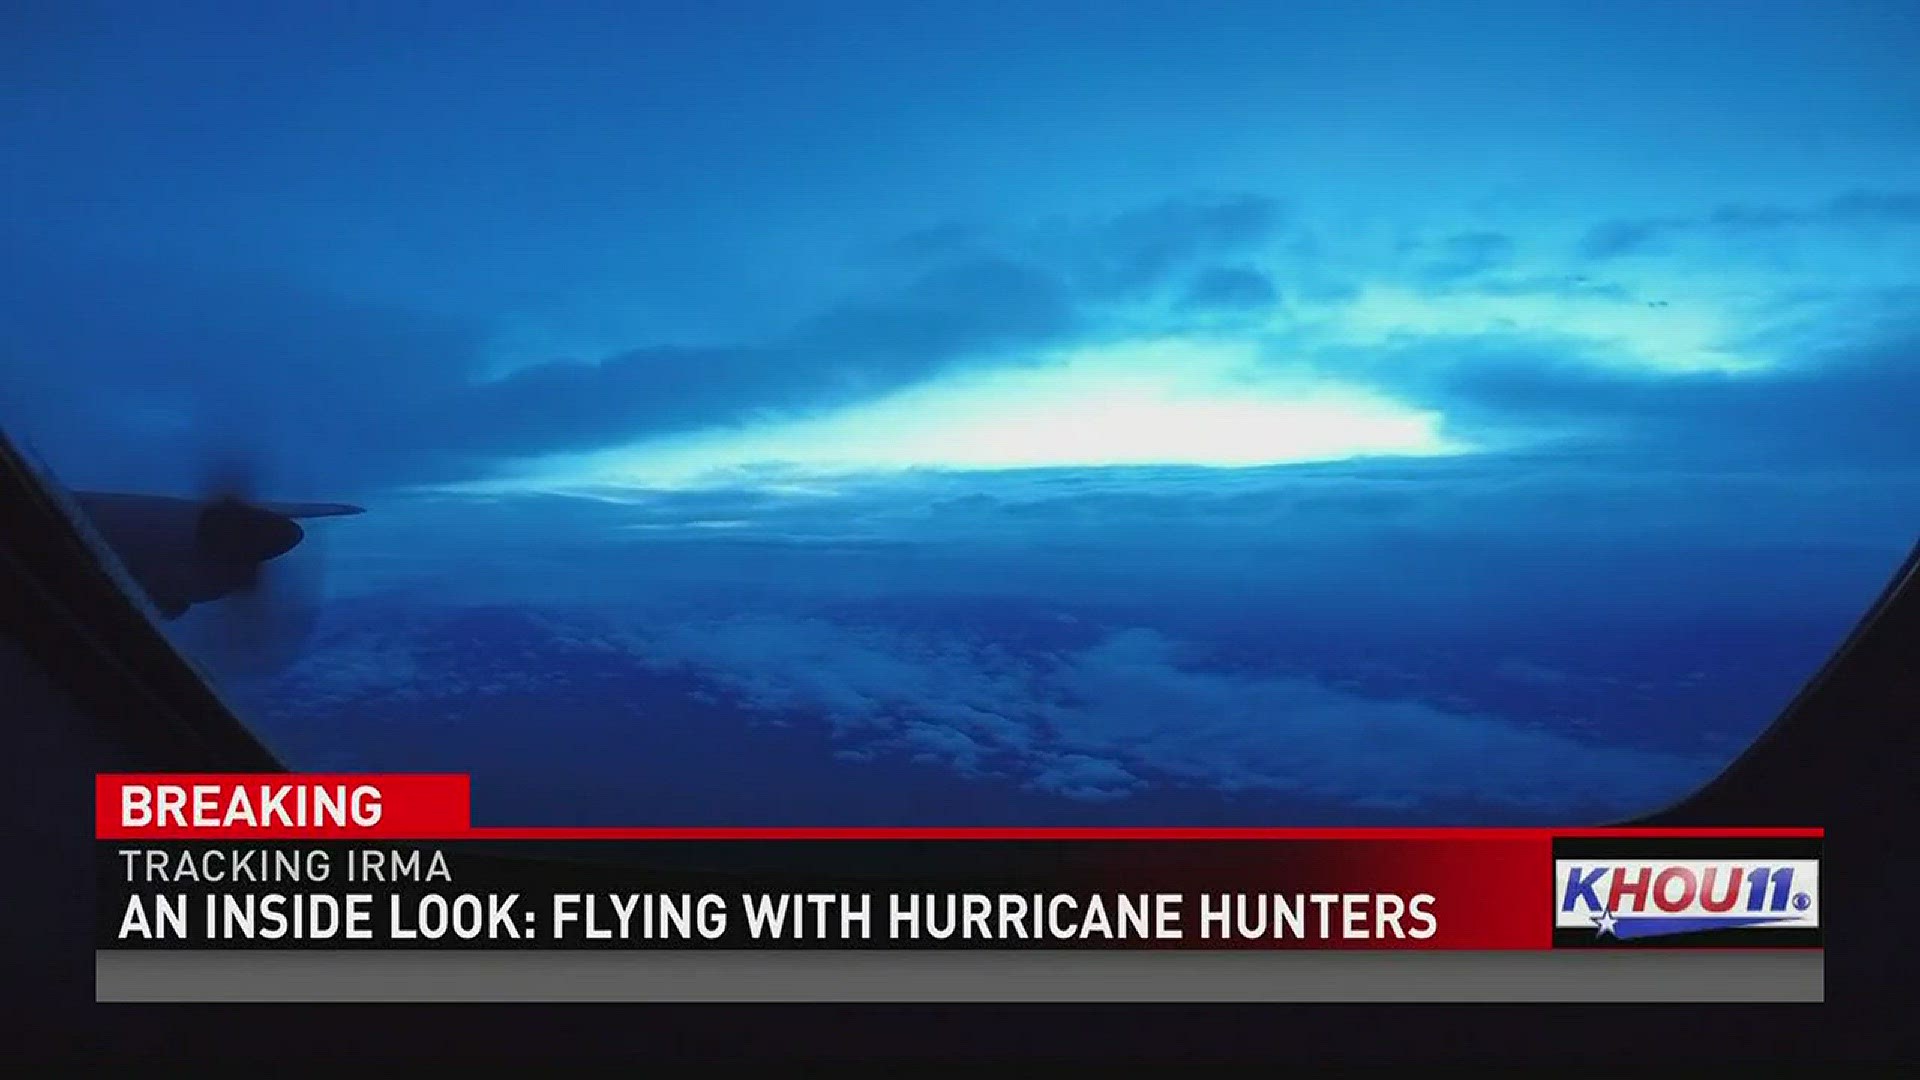 Hurricane hunters flew into the eye of Hurricane Irma.